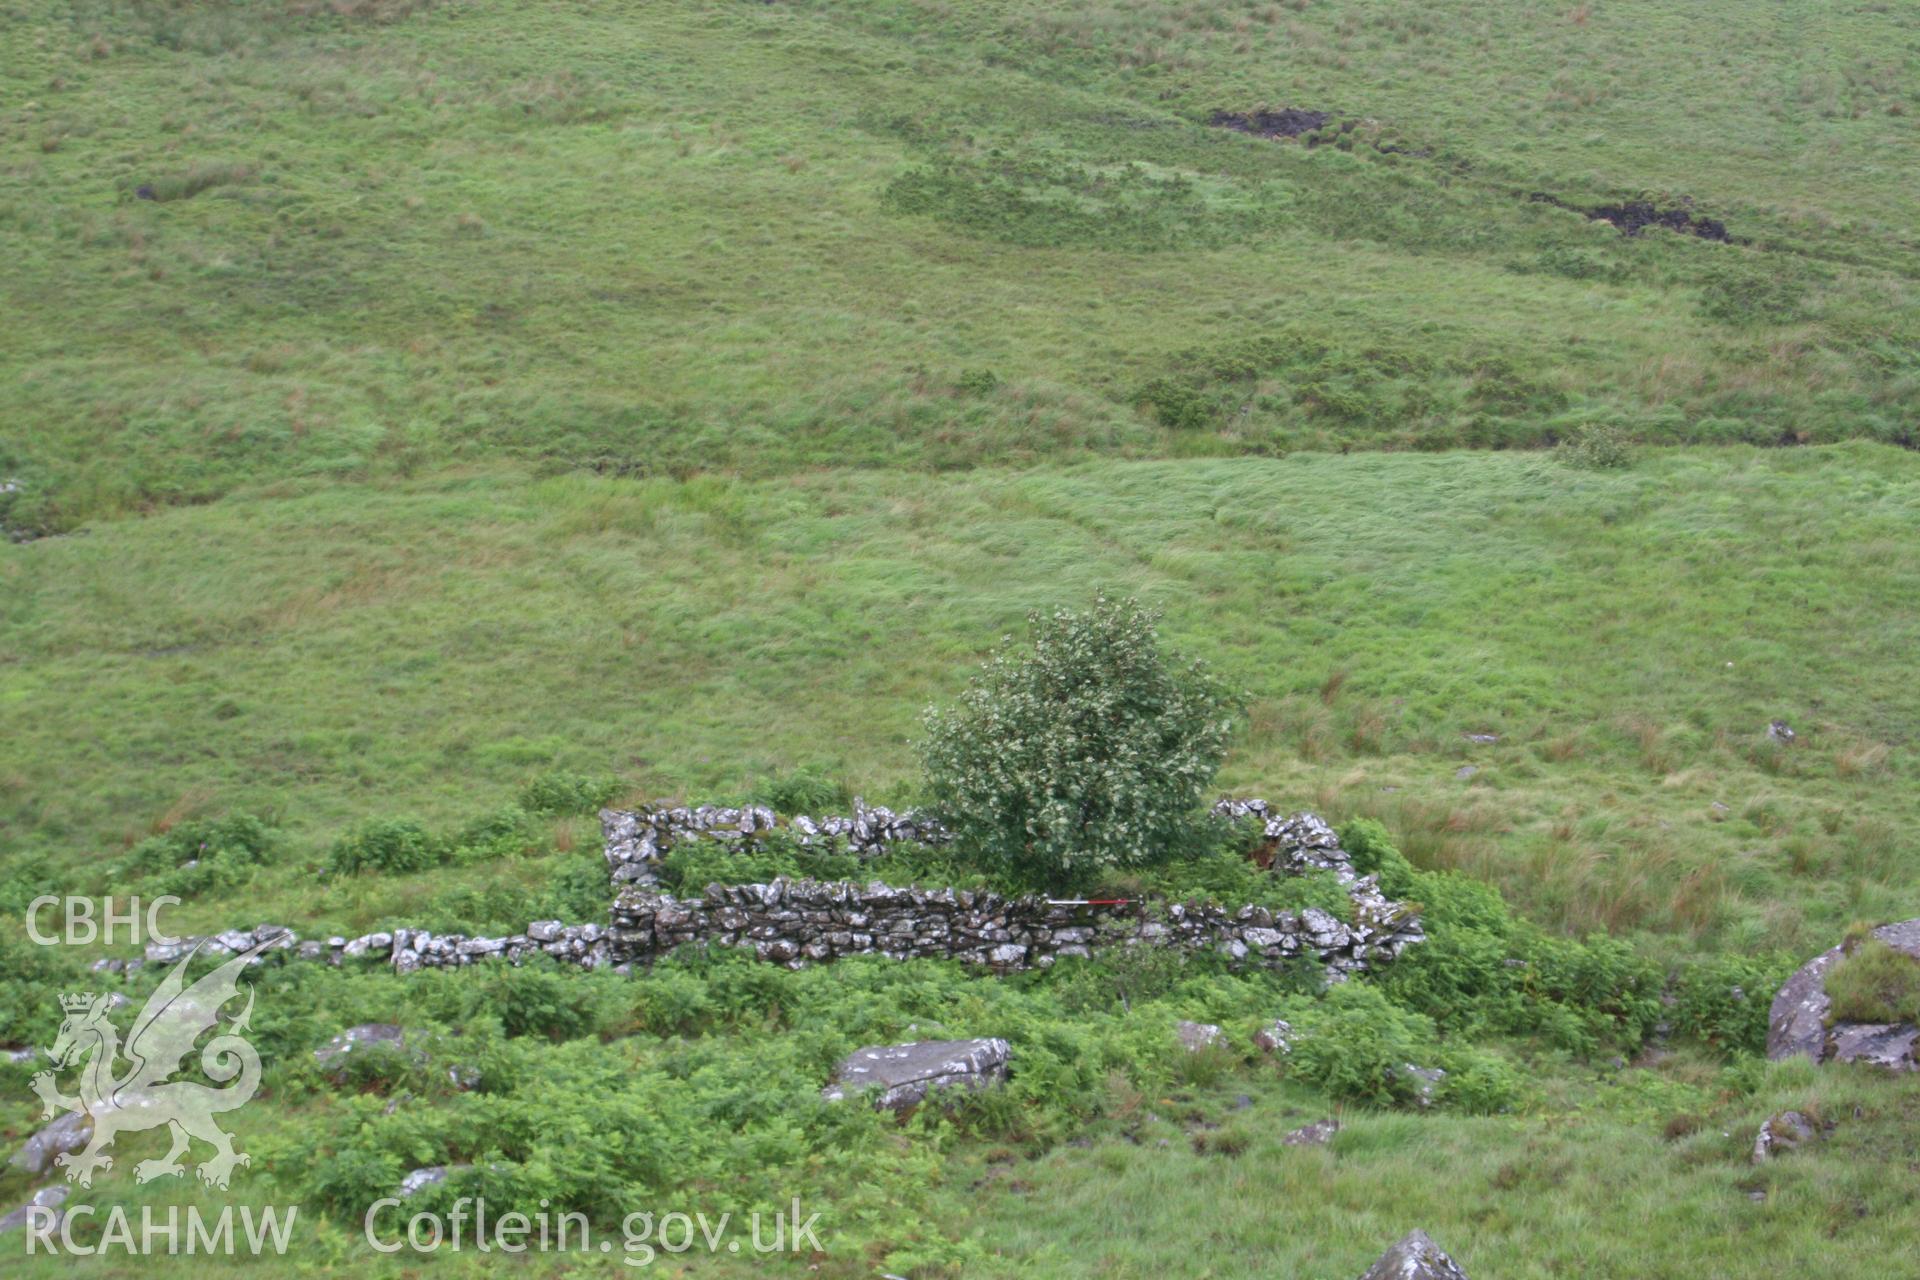 Blaenau Dolwyddelan, Sheepfold I, looking north